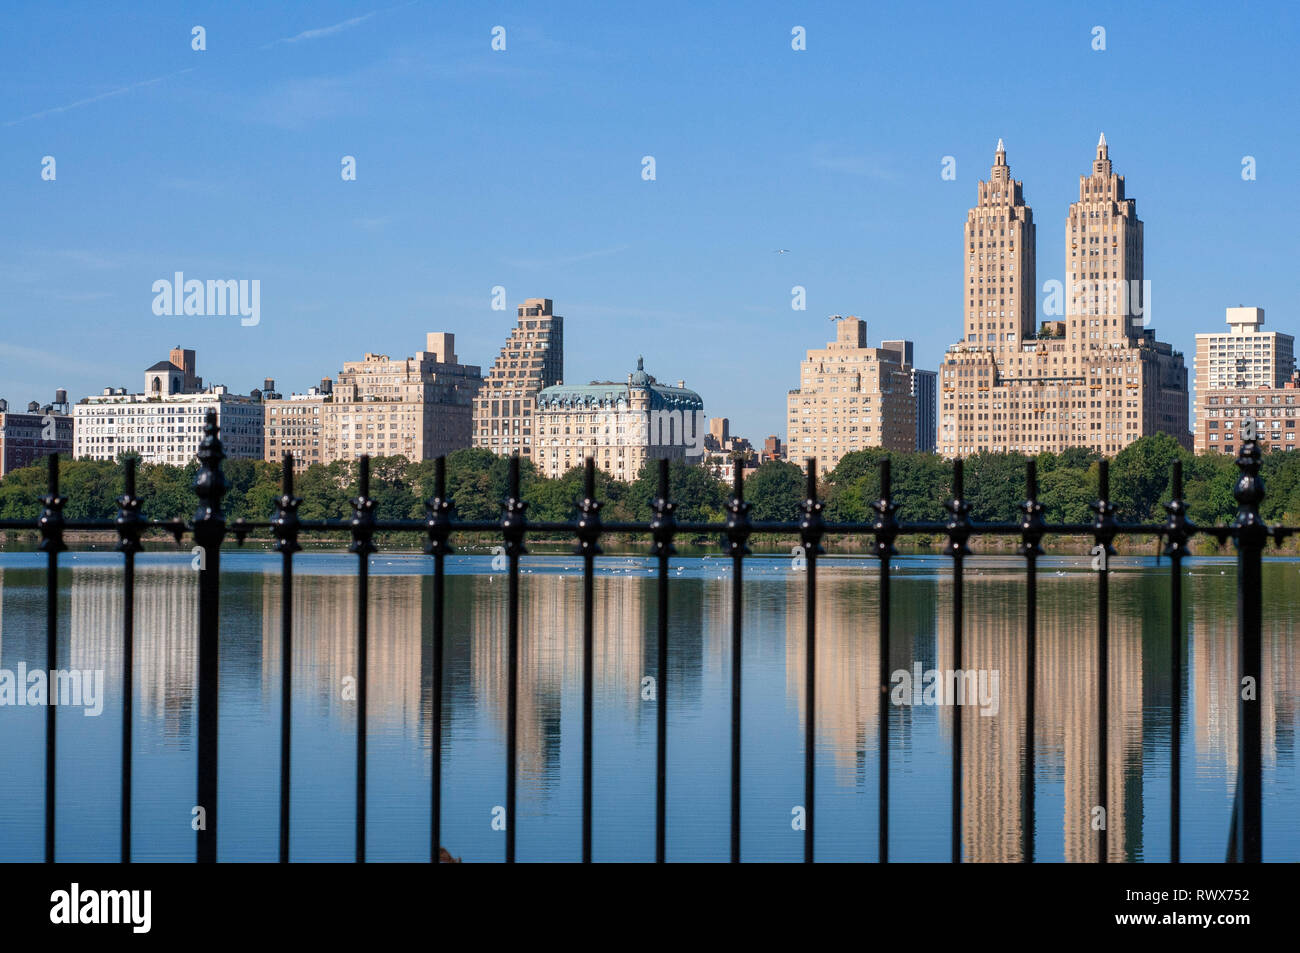 Blick auf die Upper West Side Gebäude und Central Park im Herbst. Jacqueline Kennedy Onassis Reservoir, Manhattan, New York City. Skyline des Central Park Wir Stockfoto